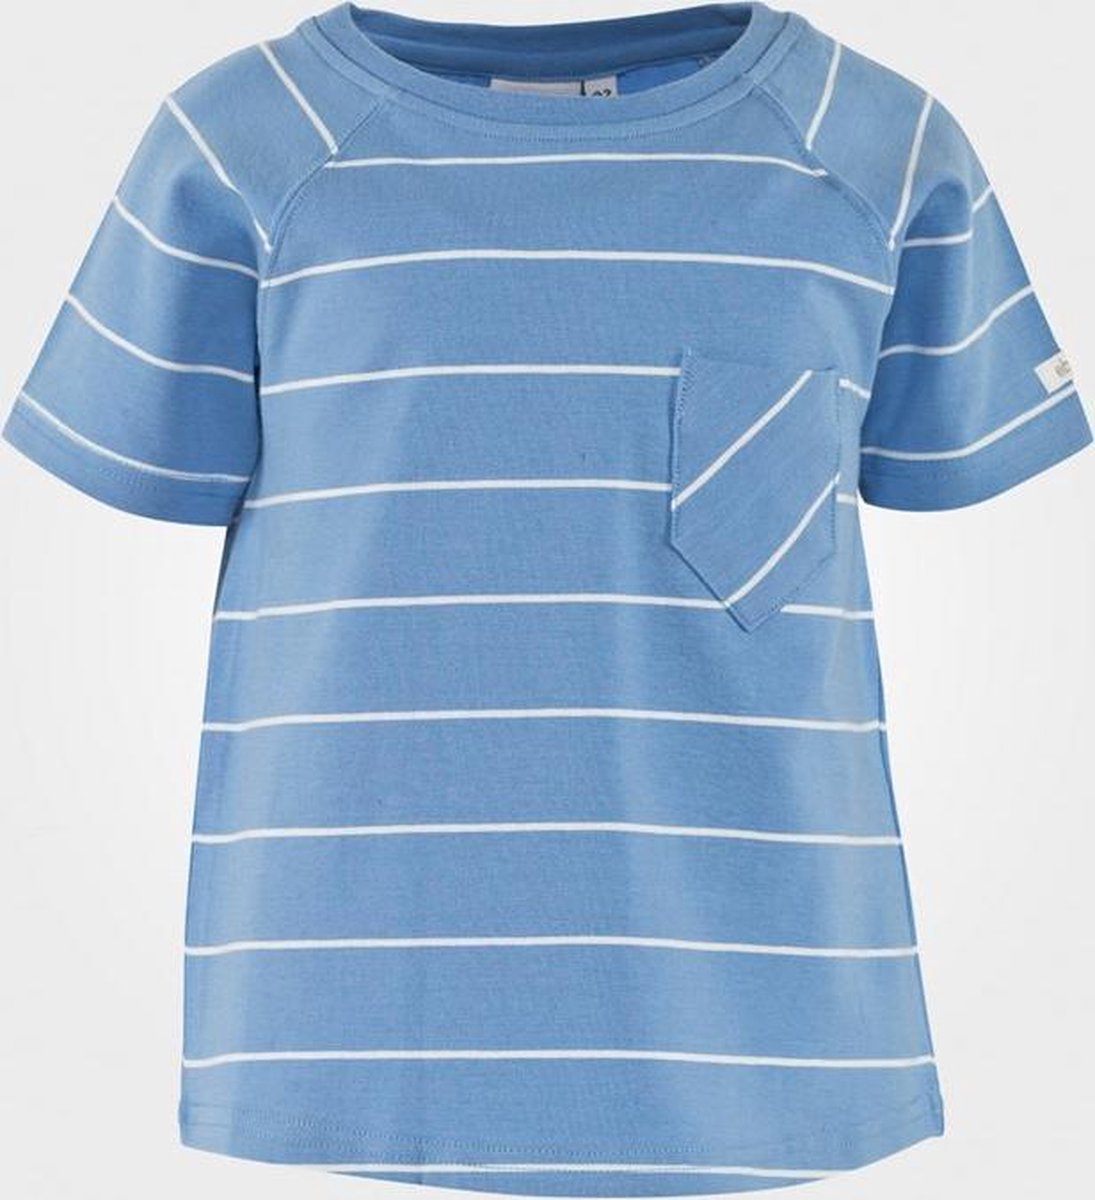 Ebbe Gram T-Shirt Sky Blue/Offwhite Short sleeve maat 98